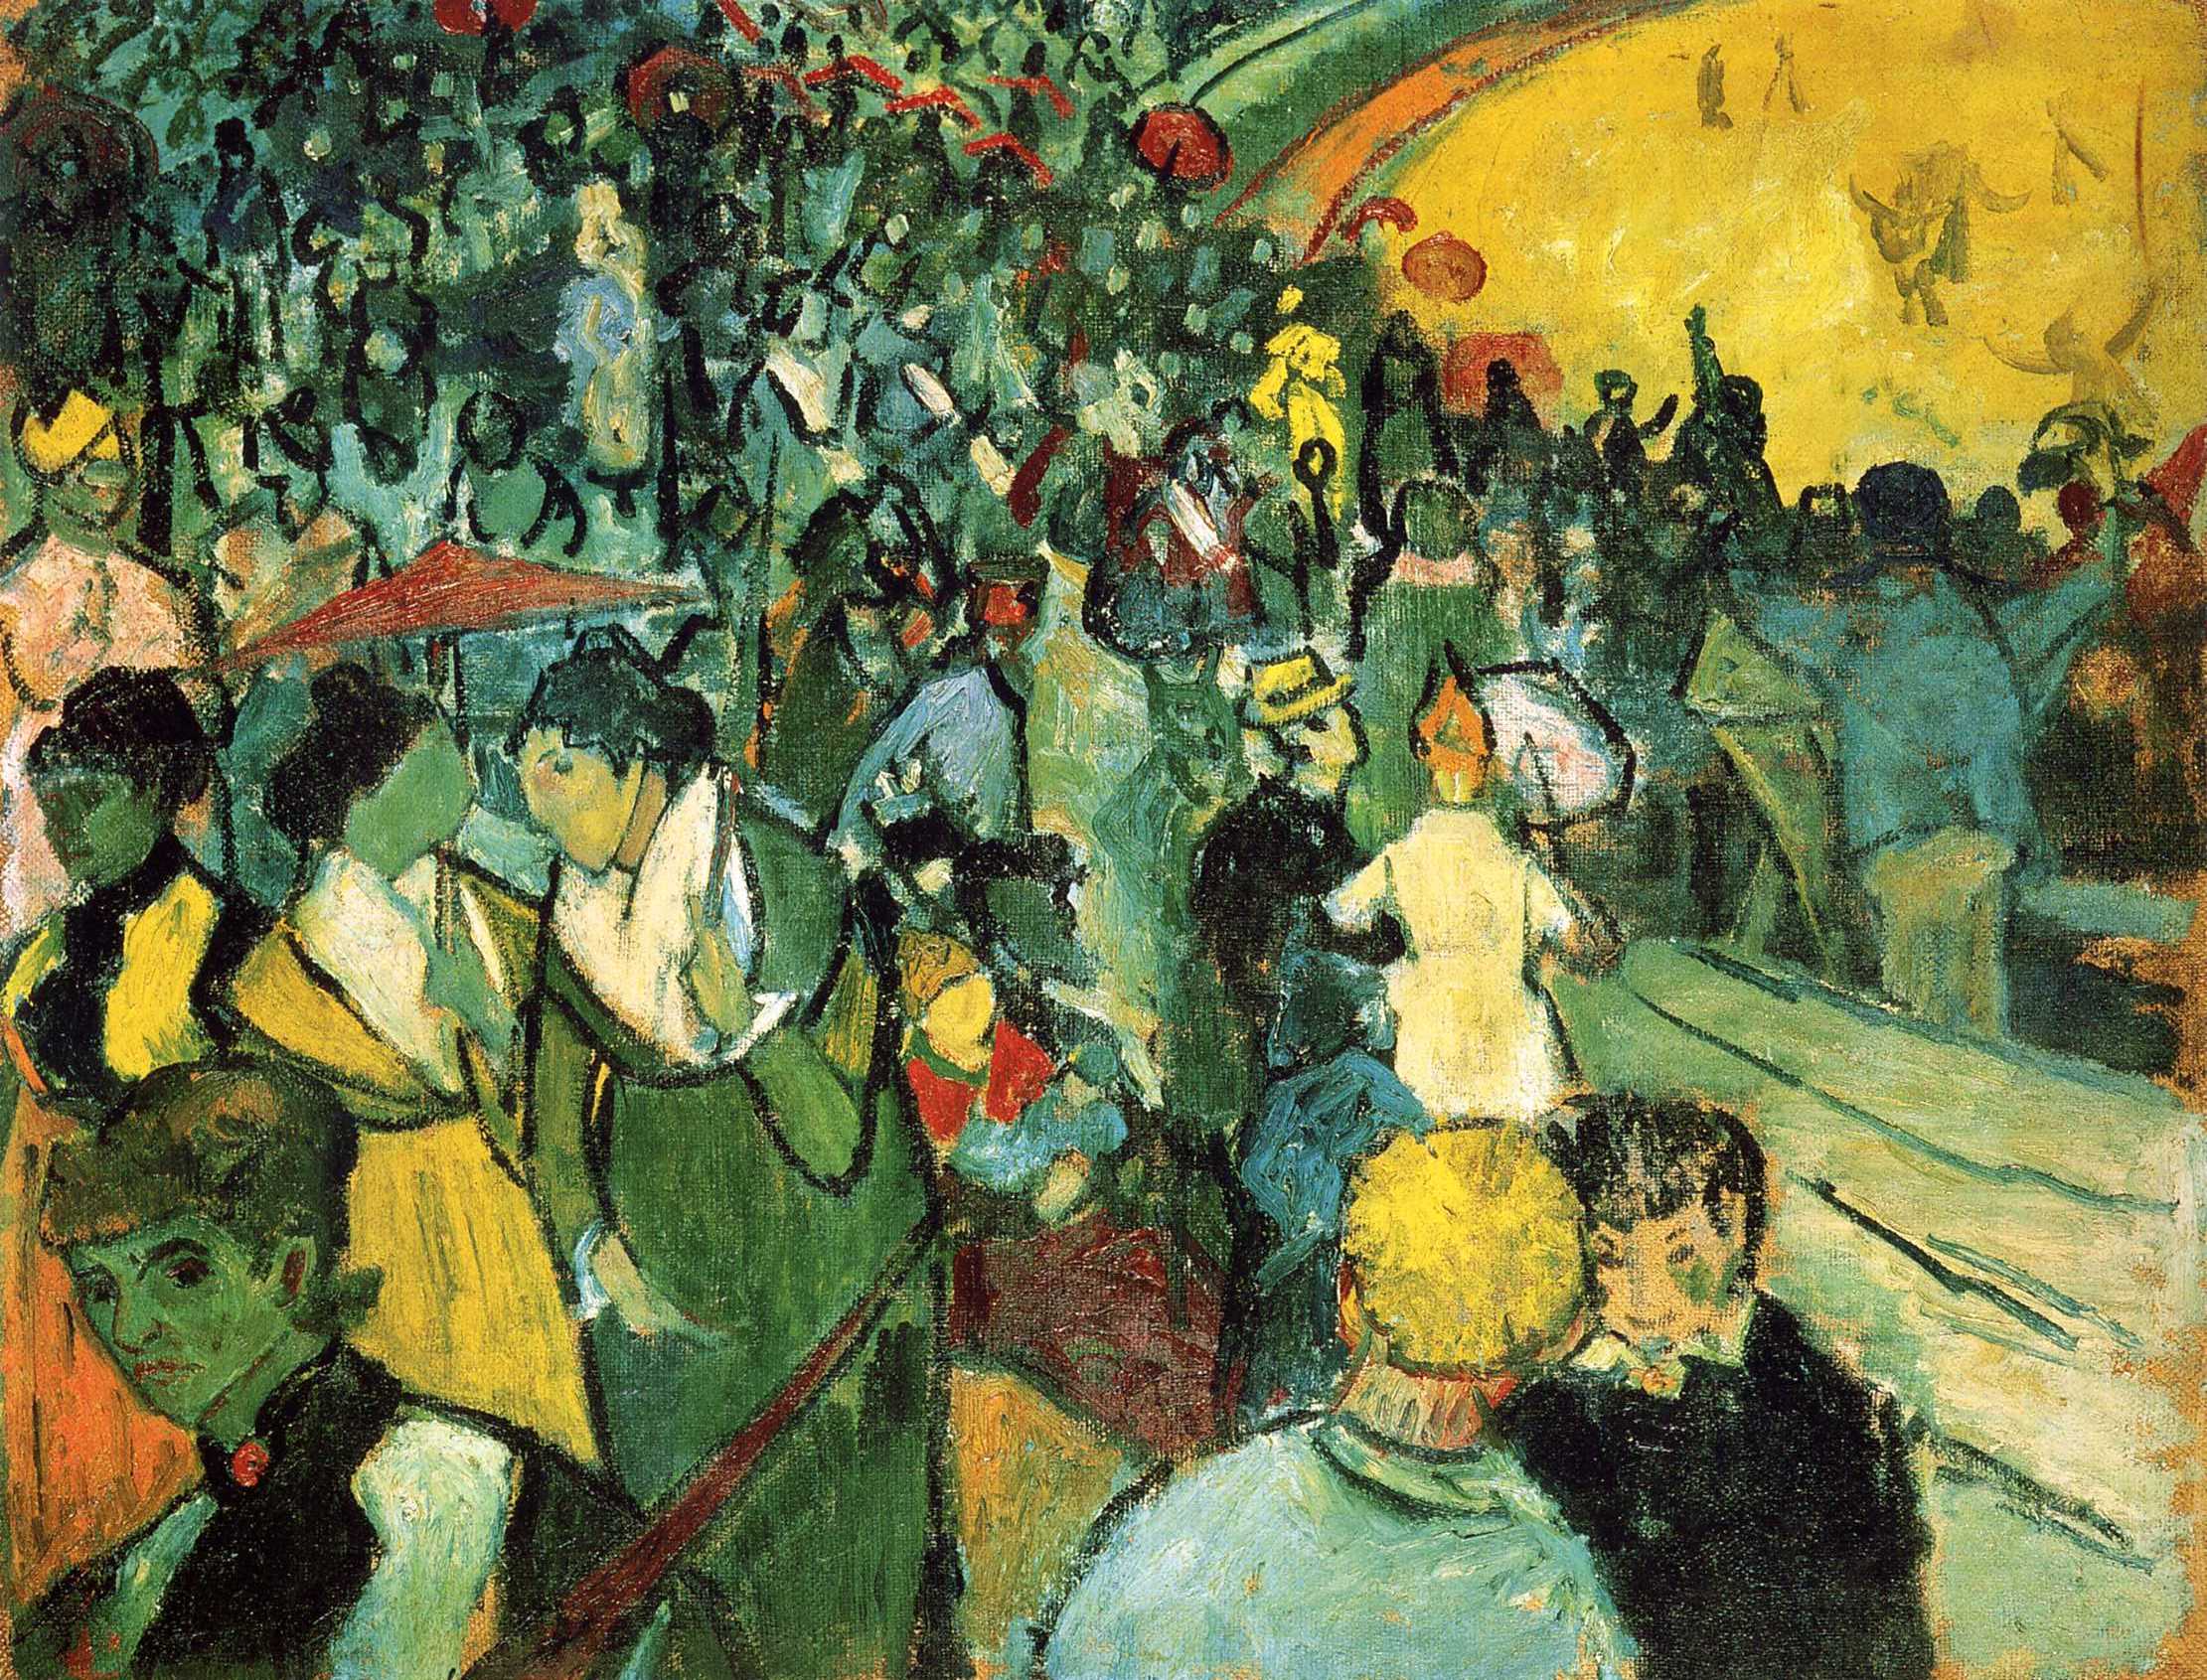 Arles'daki Arenada Seyirciler by Vincent van Gogh - 1888 - 73 x 92 cm 